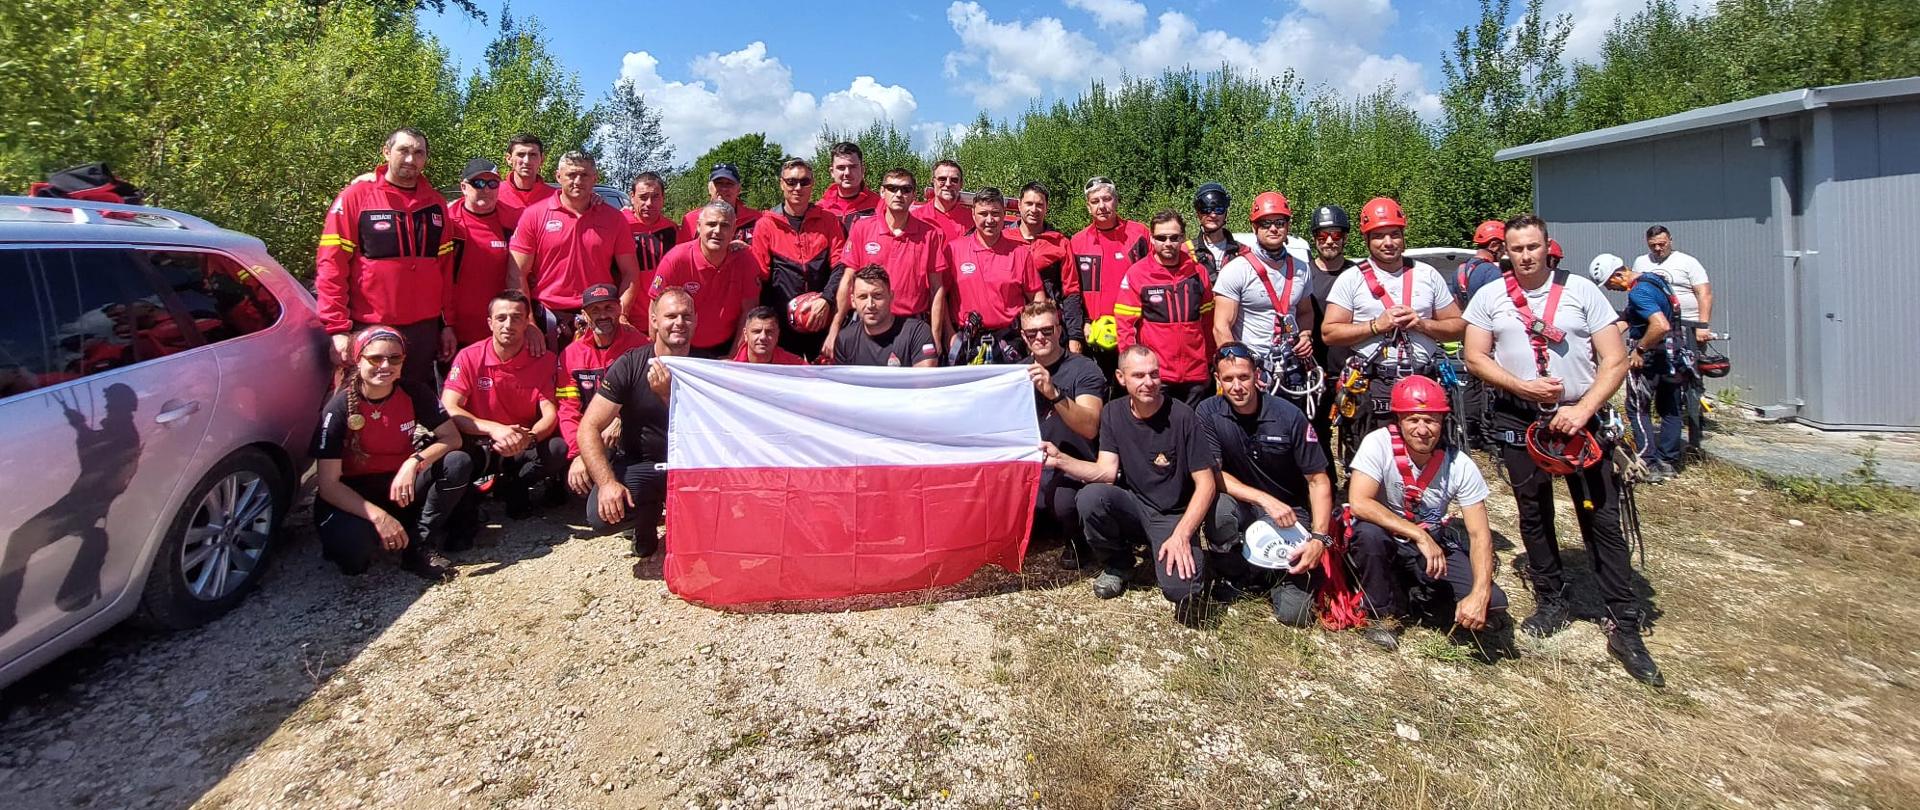 Na zdjęciu widoczna grupa strażaków w czerwonych i szarych koszulkach z Polski oraz Rumunii. Jest to wspólne zdjęcie podczas warsztatów ratowniczych z zakresu ratownictwa wysokościowego. Ratownicy po środku grupy trzymają biało-czerwoną flagę.